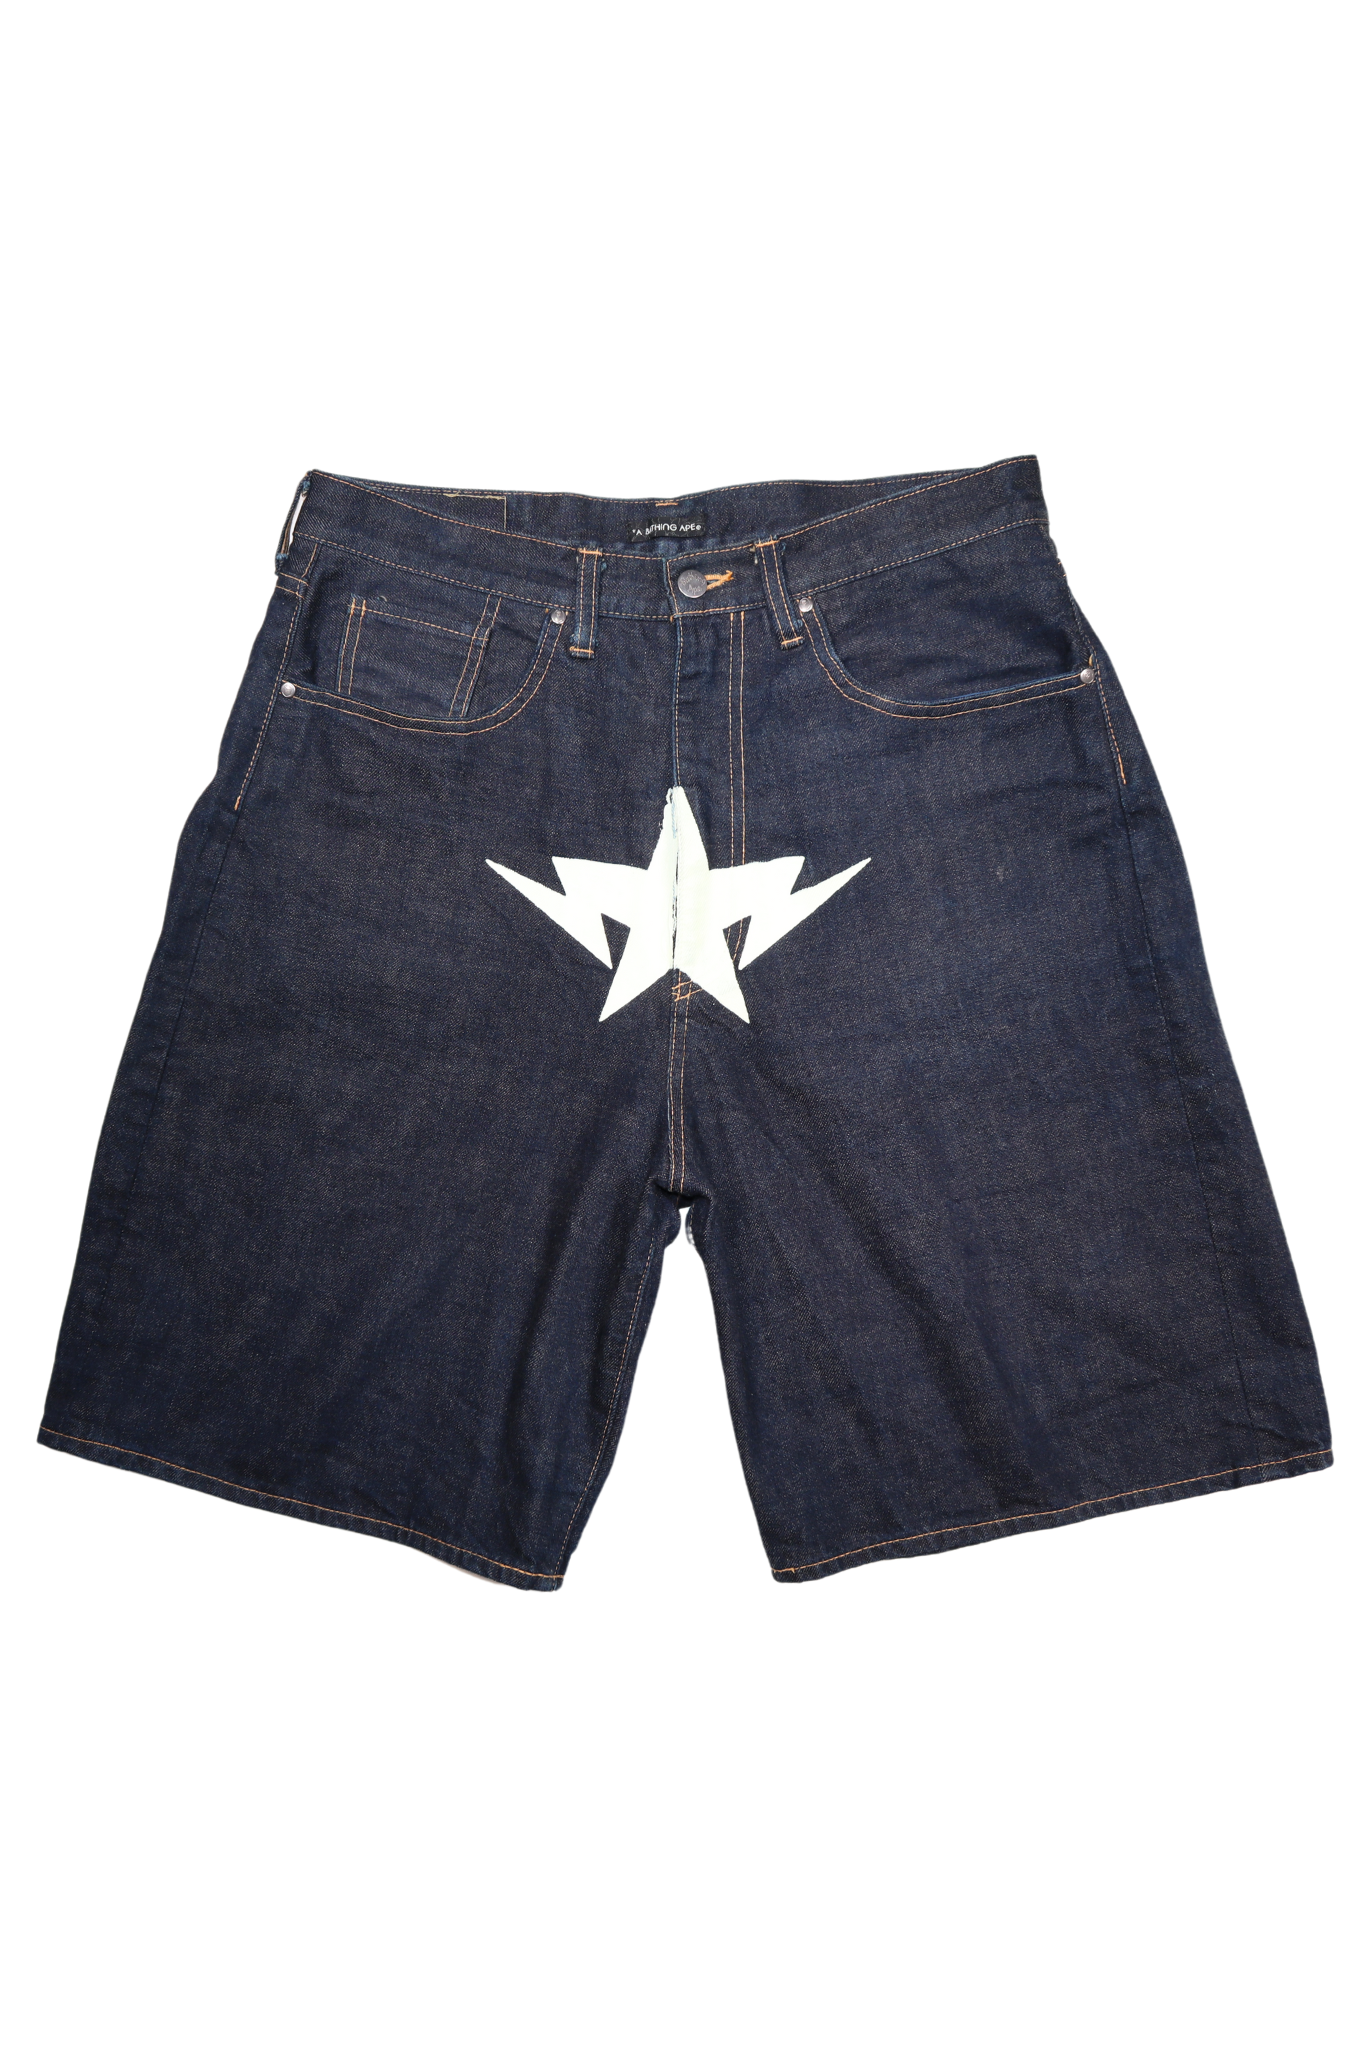 Bape White Star Denim Shorts